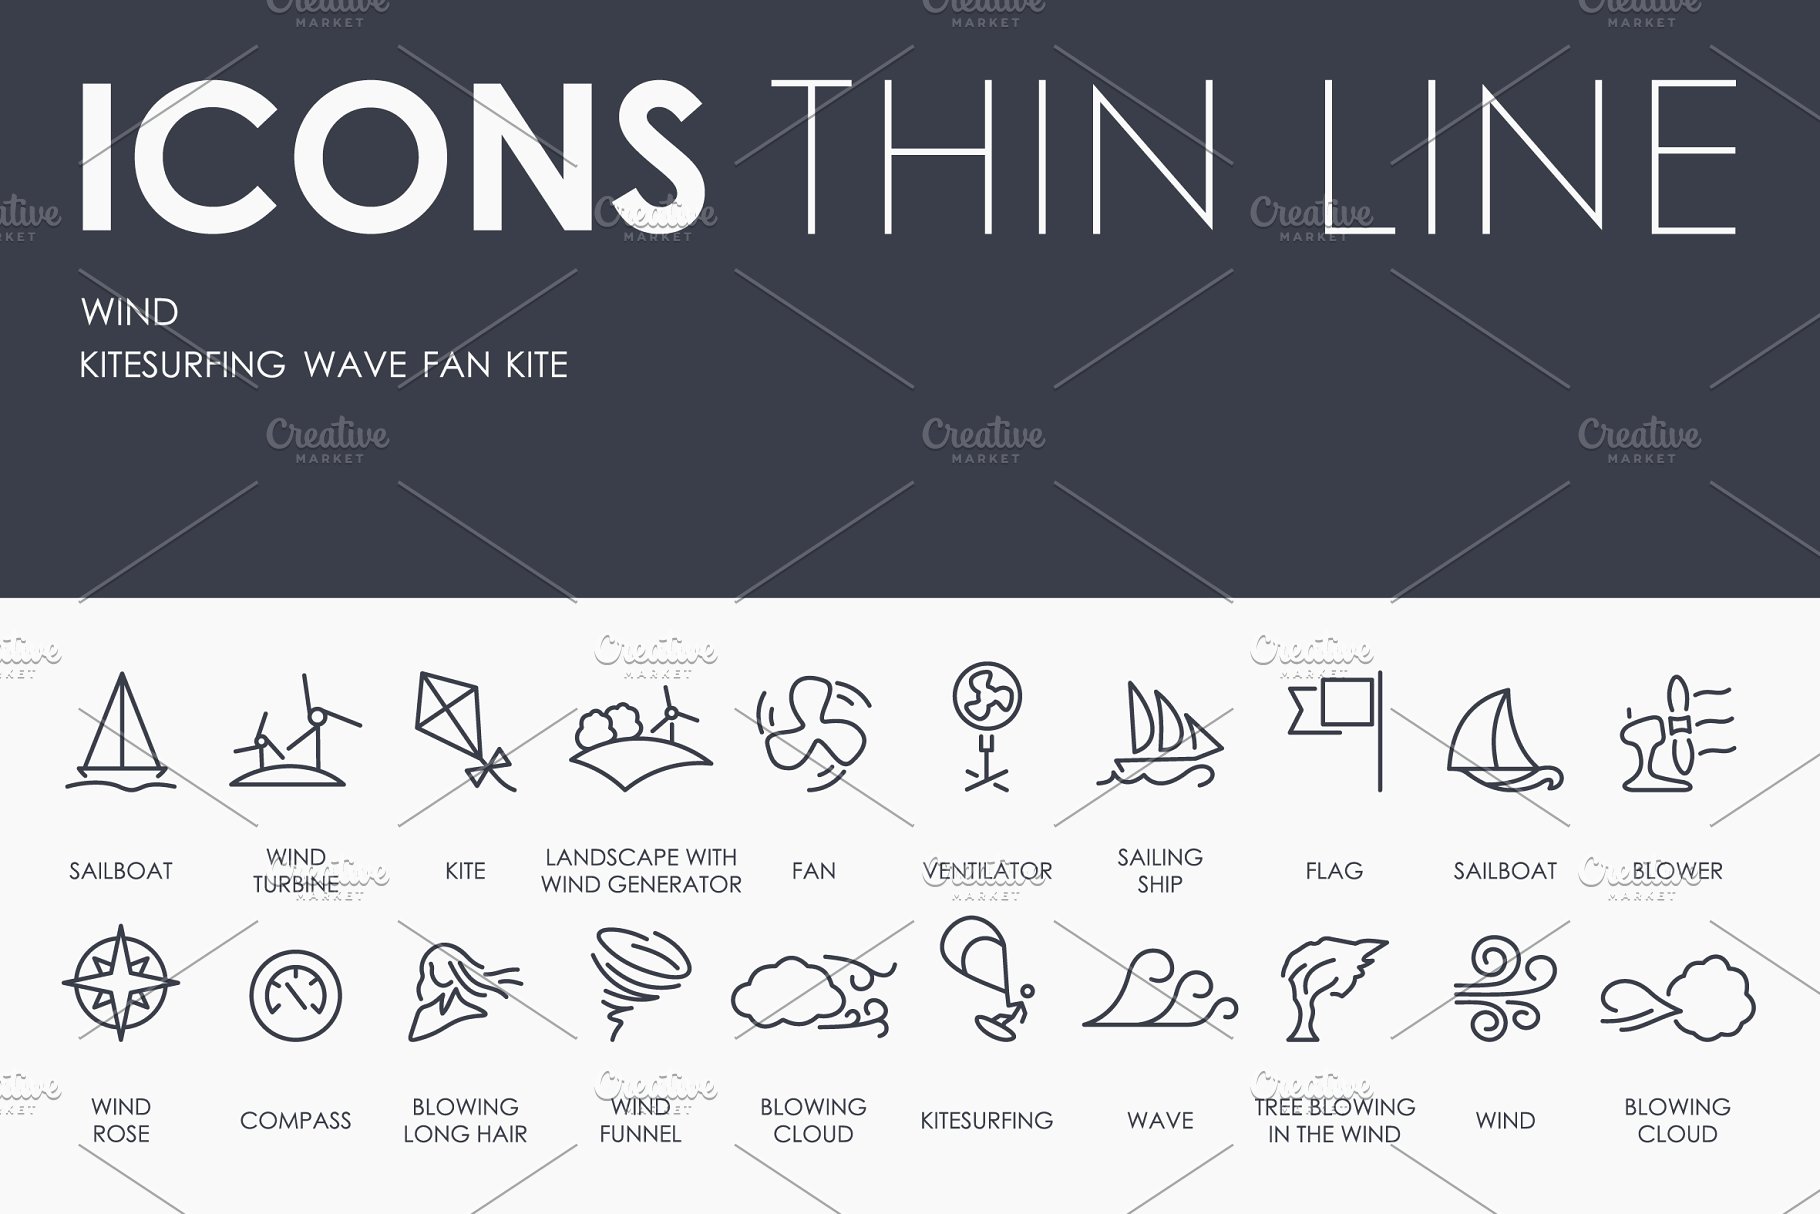 风力矢量图标素材 Wind thinline icons #